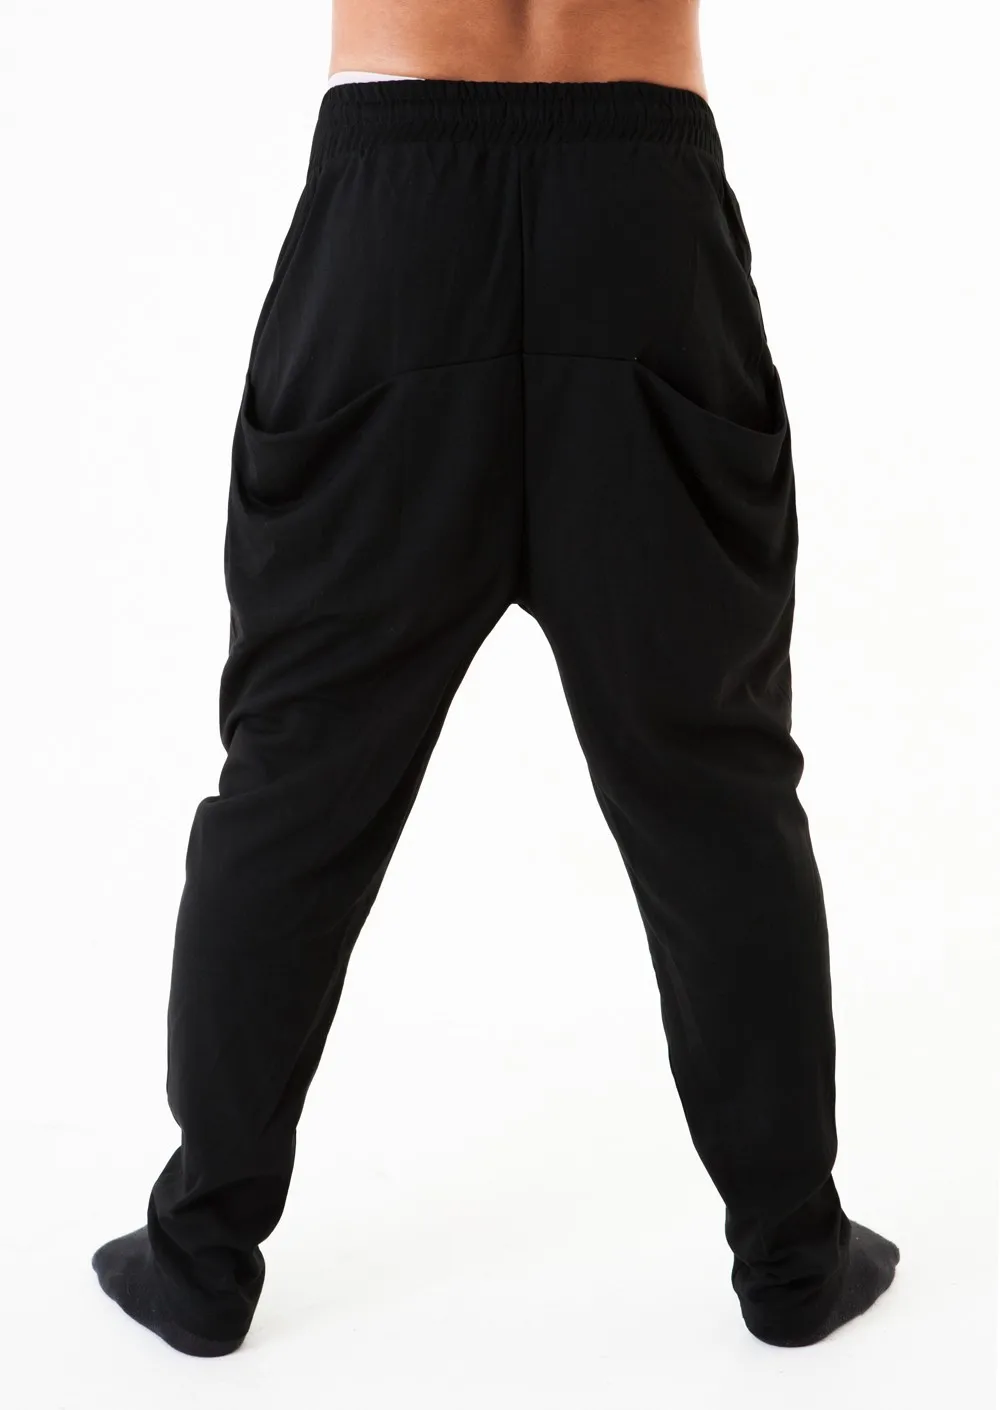 Black Jogging Pants Zipper Pockets For Mens - Buy Jogging Pants Zipper ...